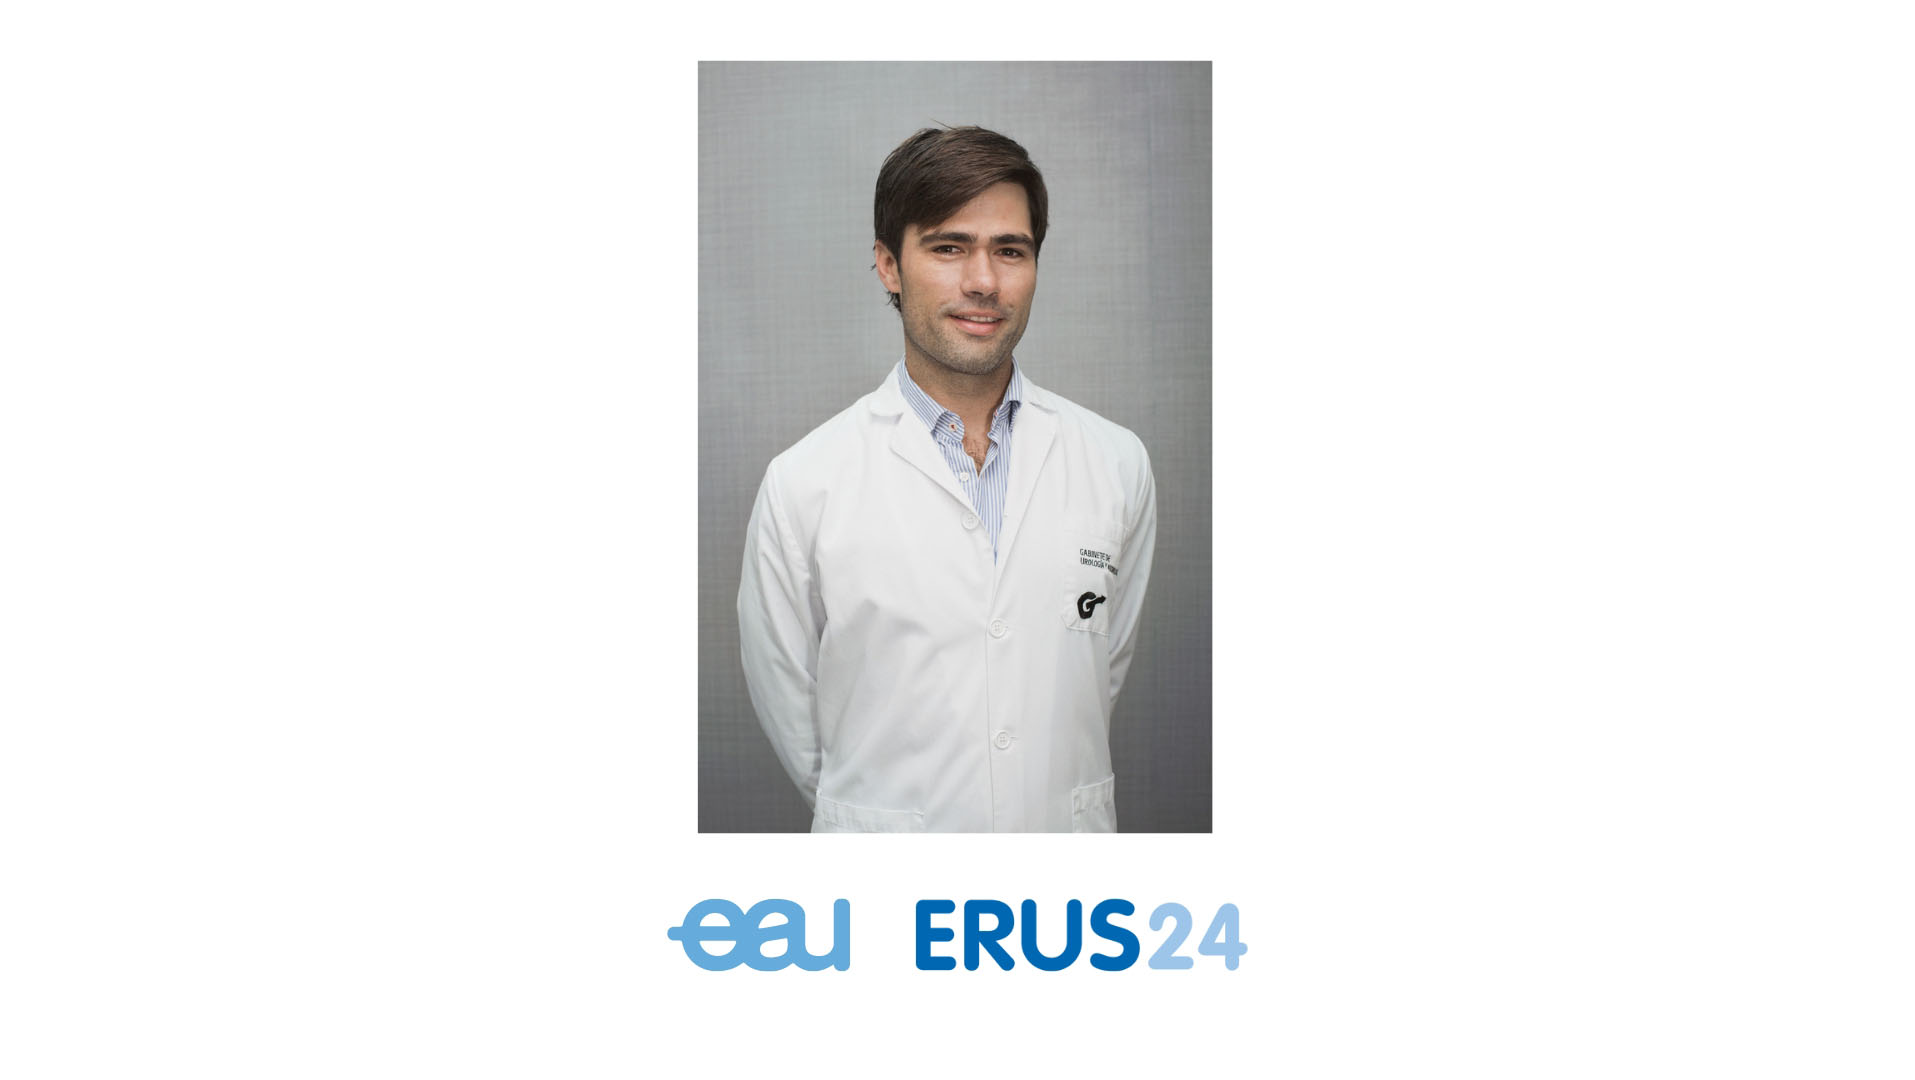 تم تعيين الدكتور بابلو خواريز ديل داغو ، مدير مركزنا ، رئيسا لتكنولوجيا ERUS التابع للجمعية الأوروبية لجراحة المسالك البولية